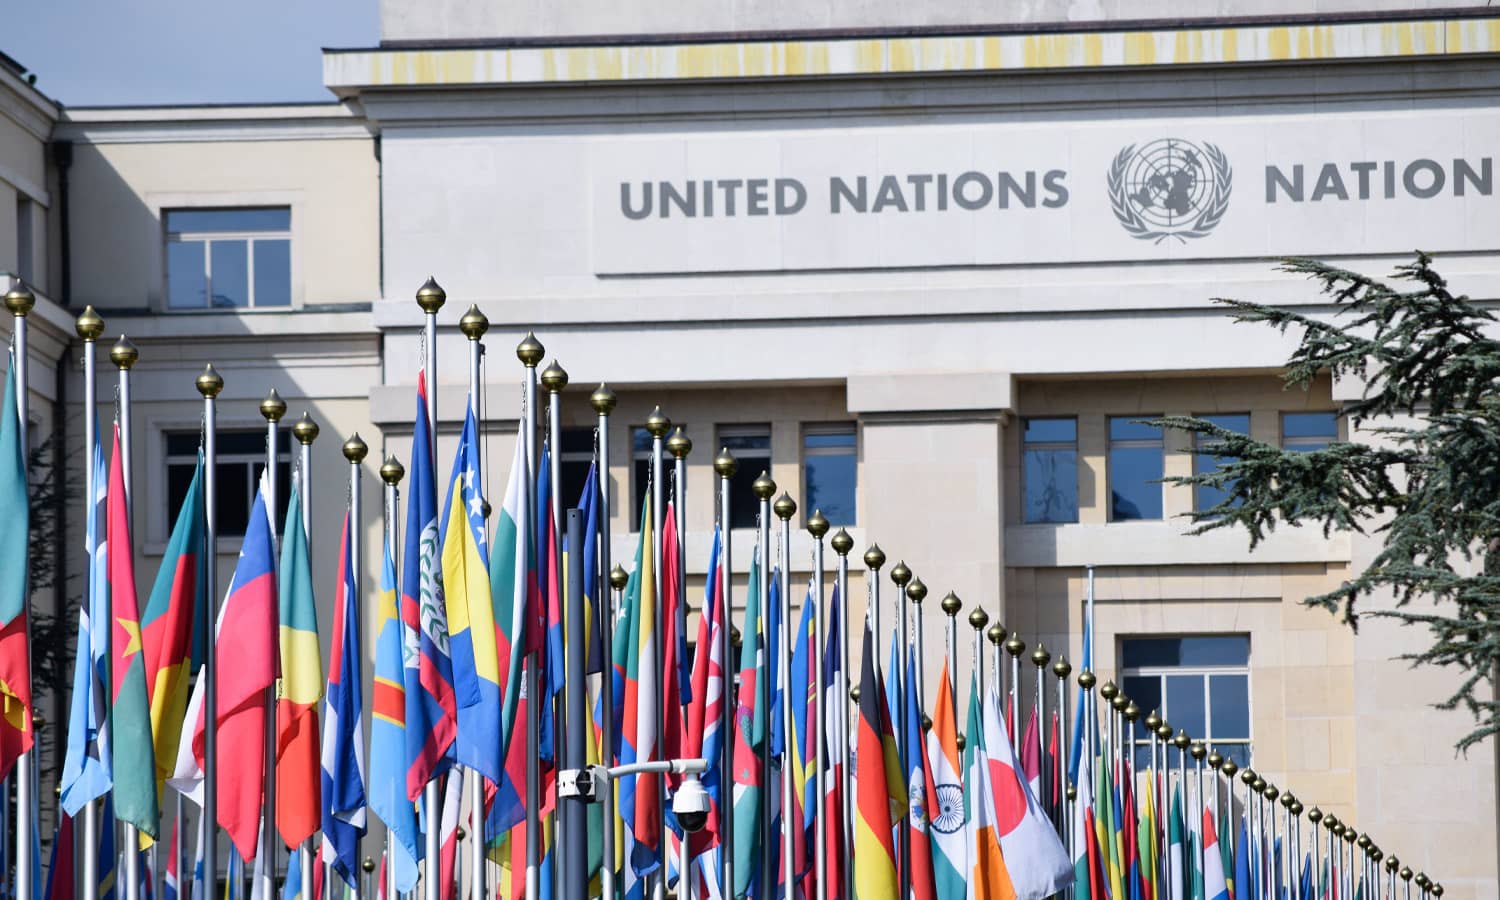 La Organización de las Naciones Unidas: Definiendo su Misión Global